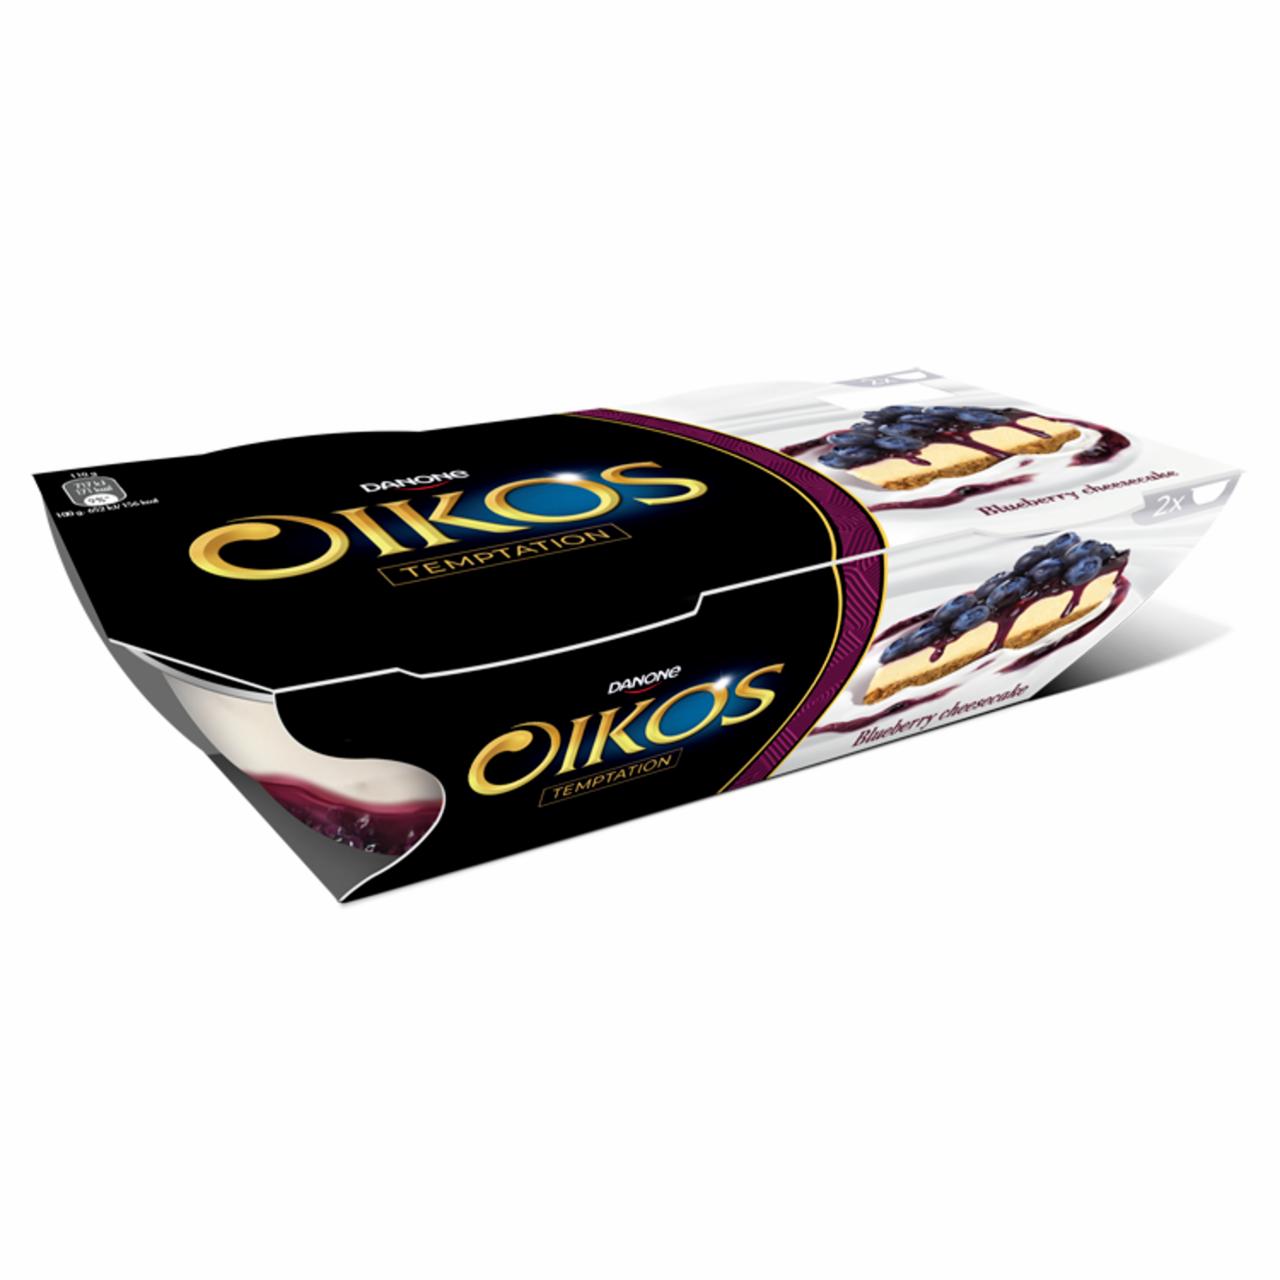 Képek - Danone Oikos élőflórás görög krémjoghurt áfonyás-sajttortaízű öntettel 2 x 110 g